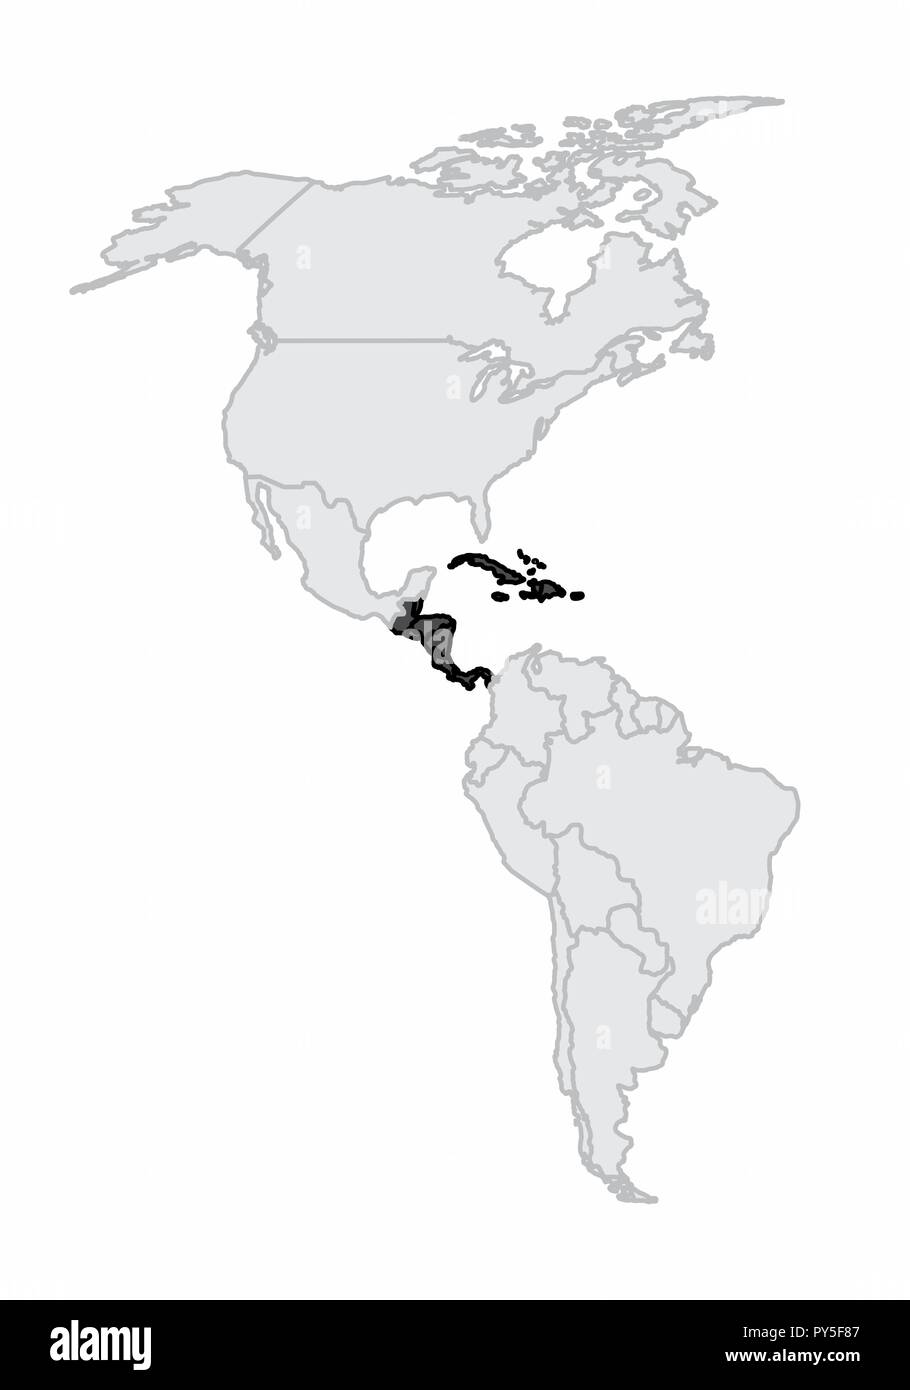 Una mappa del continente americano con l'america centrale e i Caraibi evidenziata Illustrazione Vettoriale